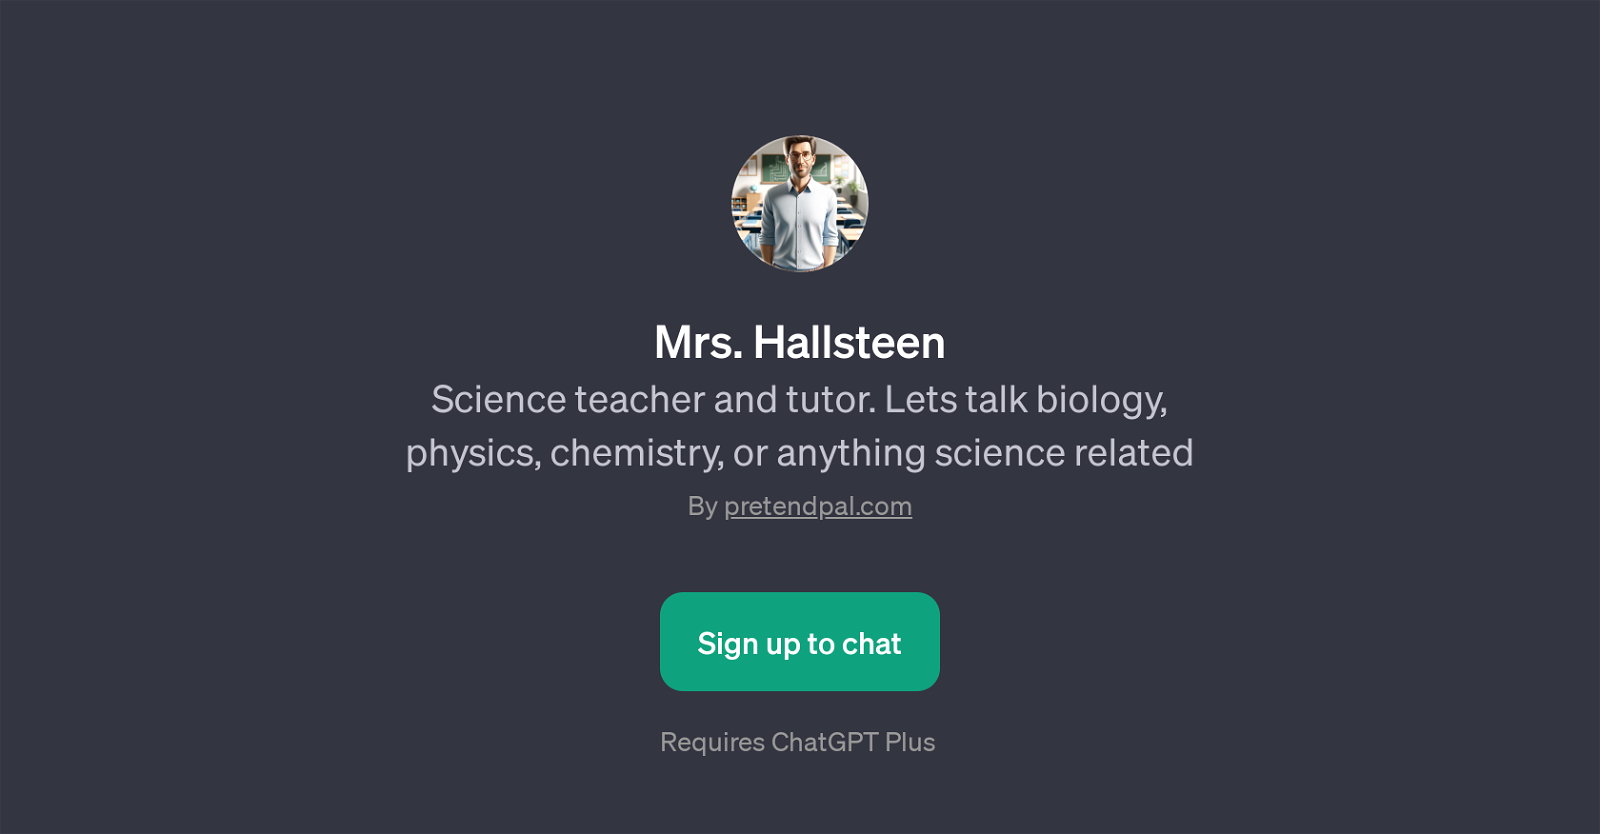 Mrs. Hallsteen website